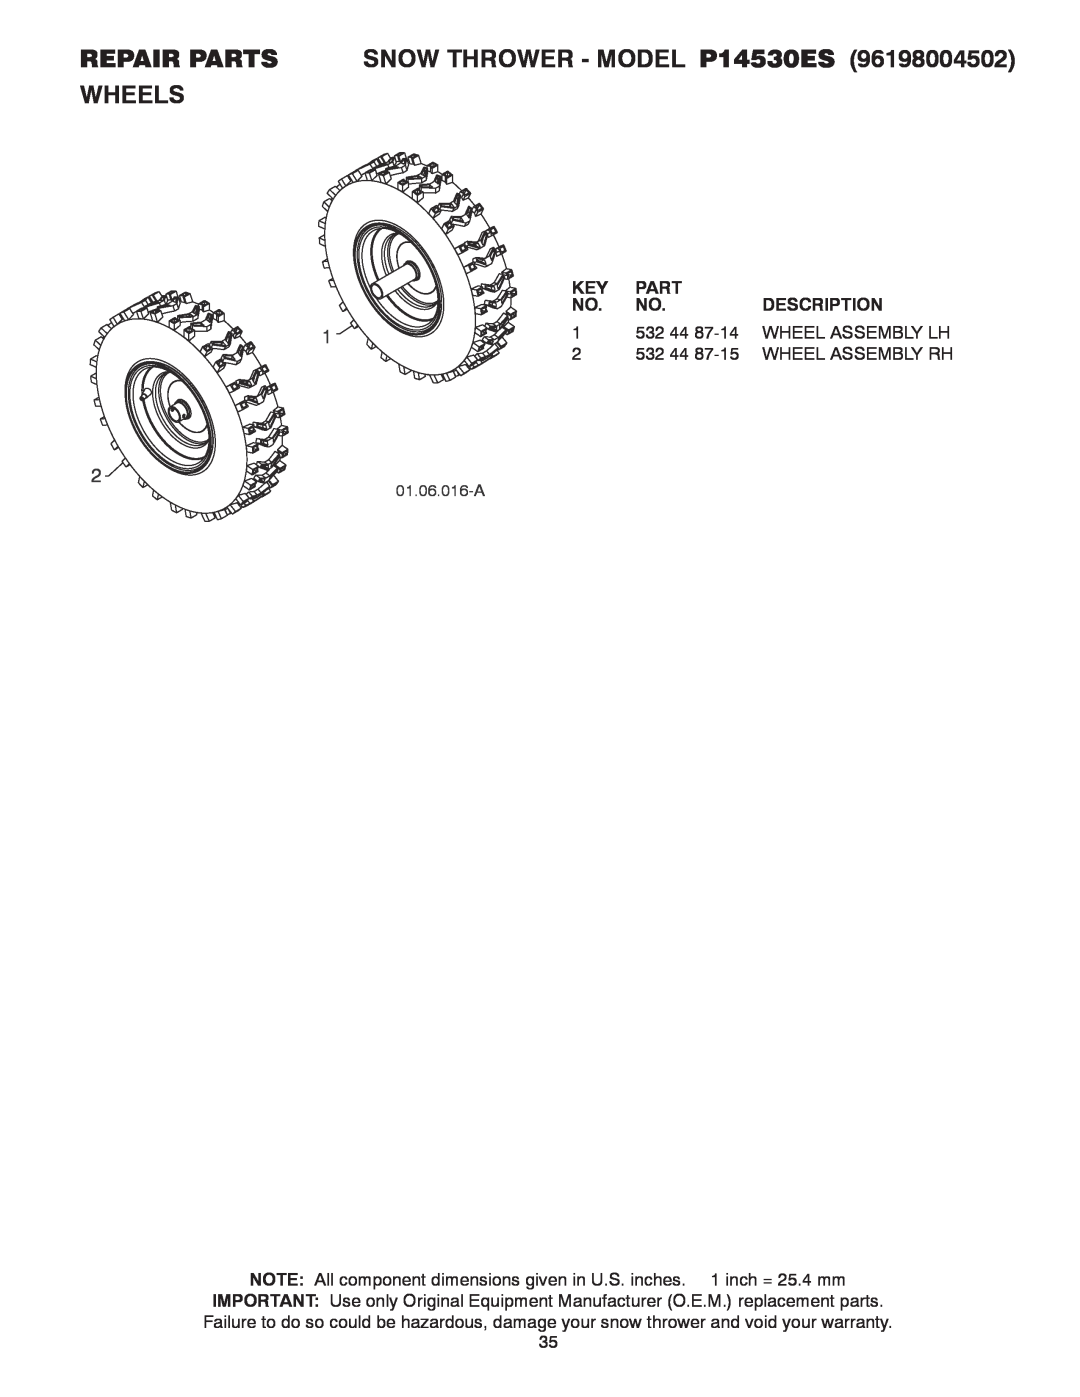 Poulan REPAIR PARTS SNOW THROWER - MODEL P14530ES WHEELS, Part, Description, 532, Wheel Assembly Lh, 01.06.016-A 